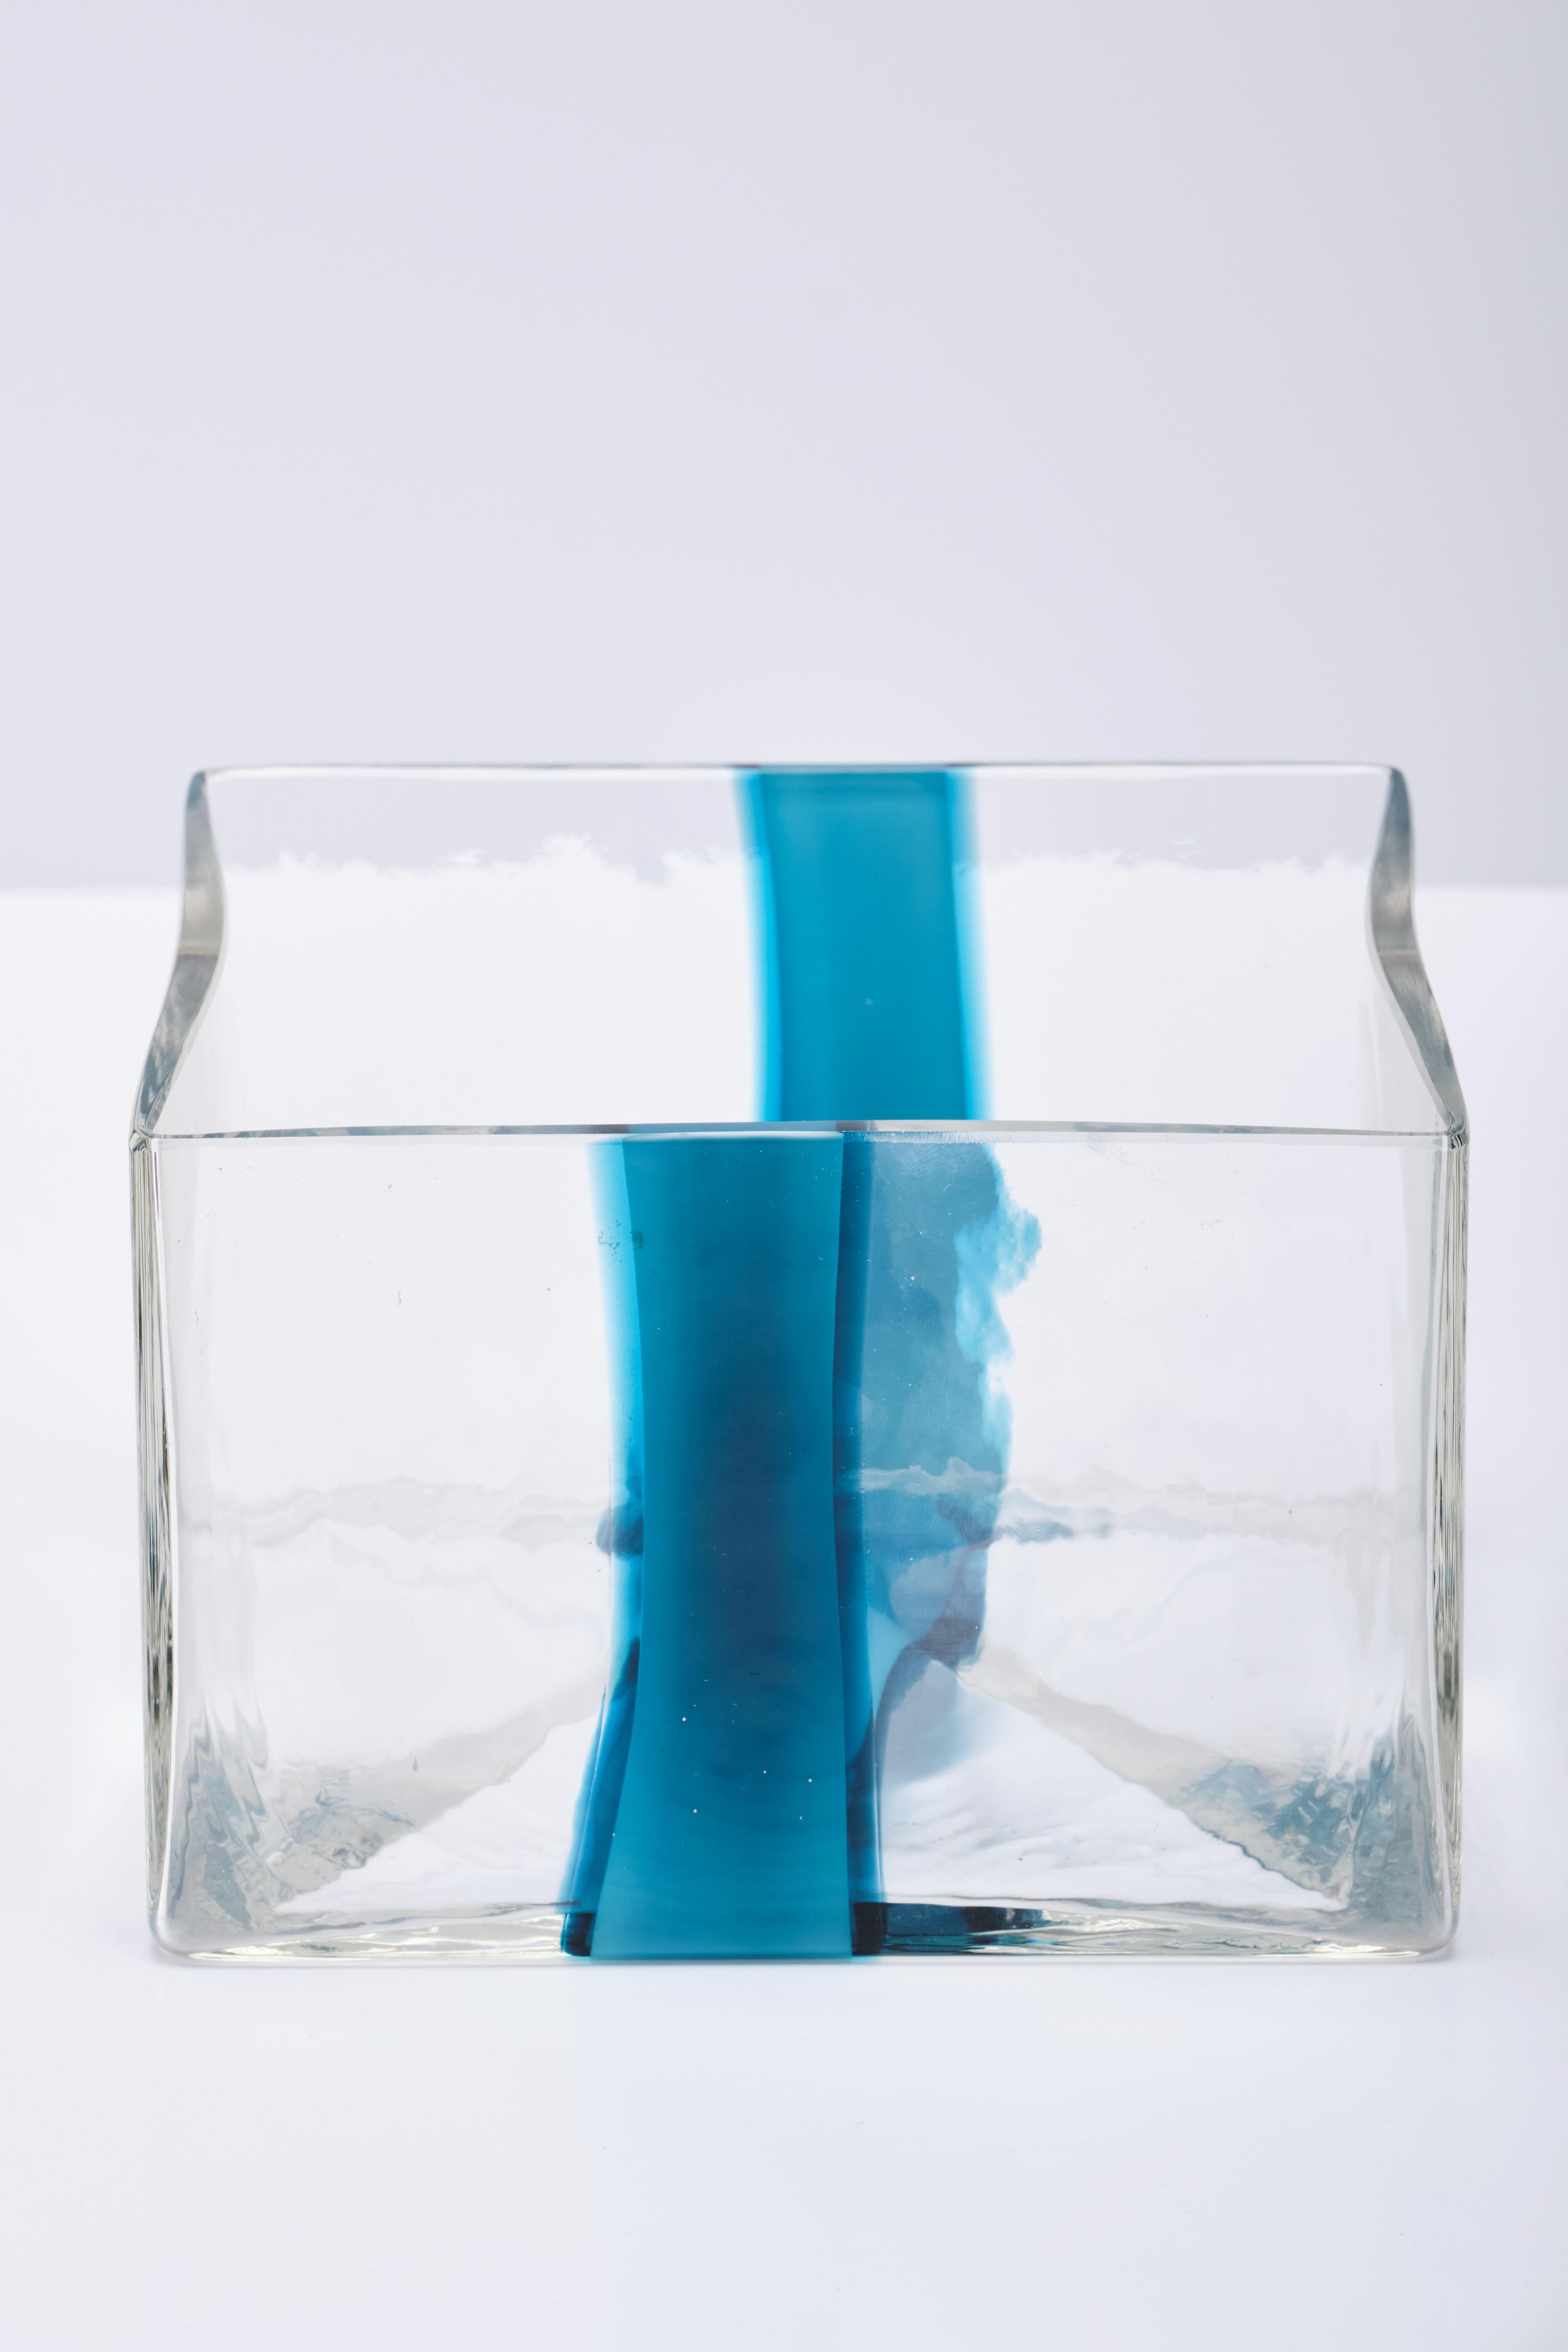 Pierre Cardin Vase for Venini - Murano glass - Italian design 1970s For Sale 1